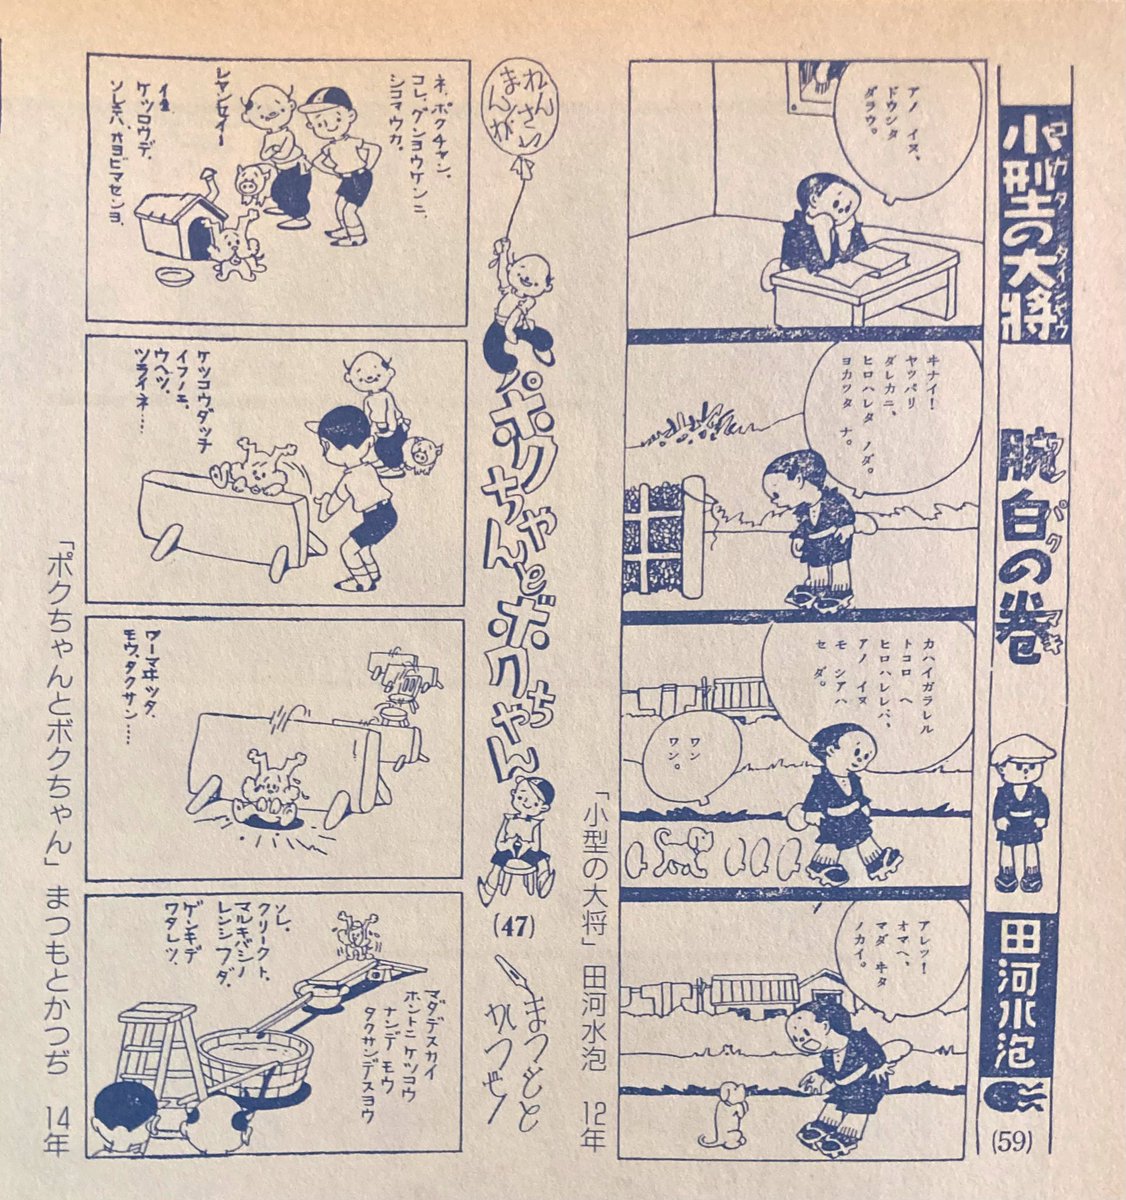 平成8年（1996）花も嵐も12月号 表紙は #松本かつぢ 先生畫「湖水への道」 この絵は当時の雑誌のグラビアだったものかと思いますが、ペンの筆跡がしっかりとわかりますね。 他に #まつもとかつぢ 先生と #田河水泡 先生の毎日小学生新聞に載った４コマ漫画。 共に🐕ネタです。